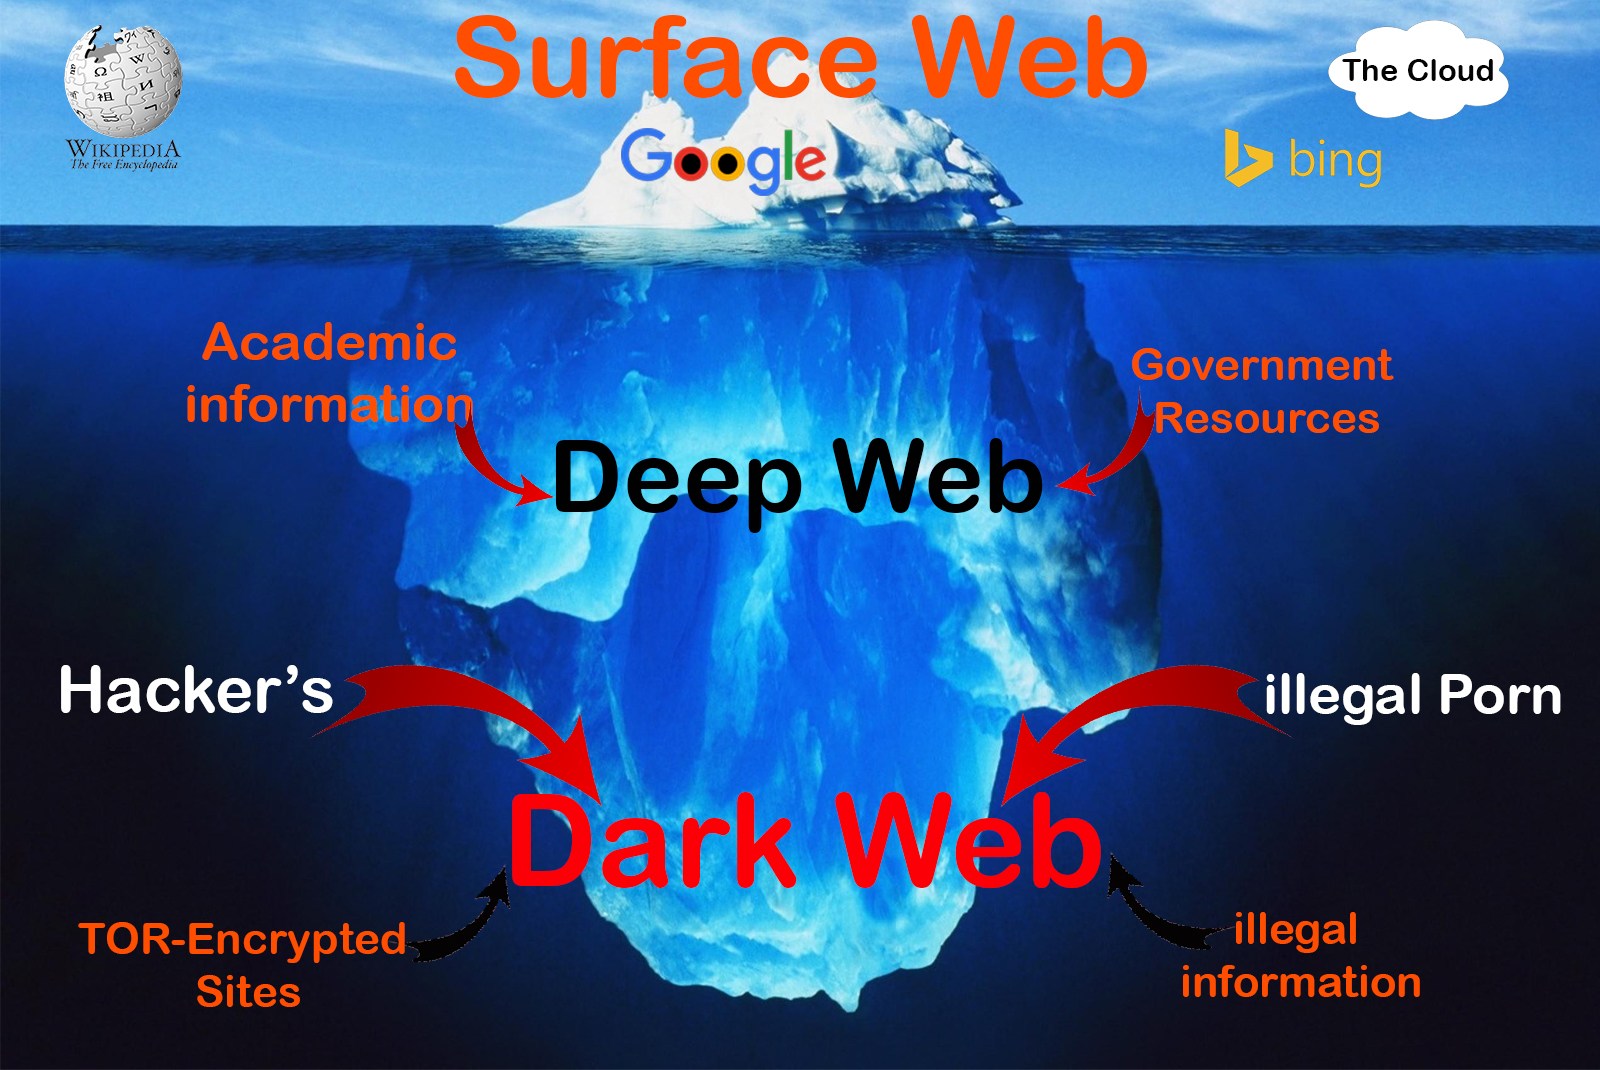 Deep Web Markets